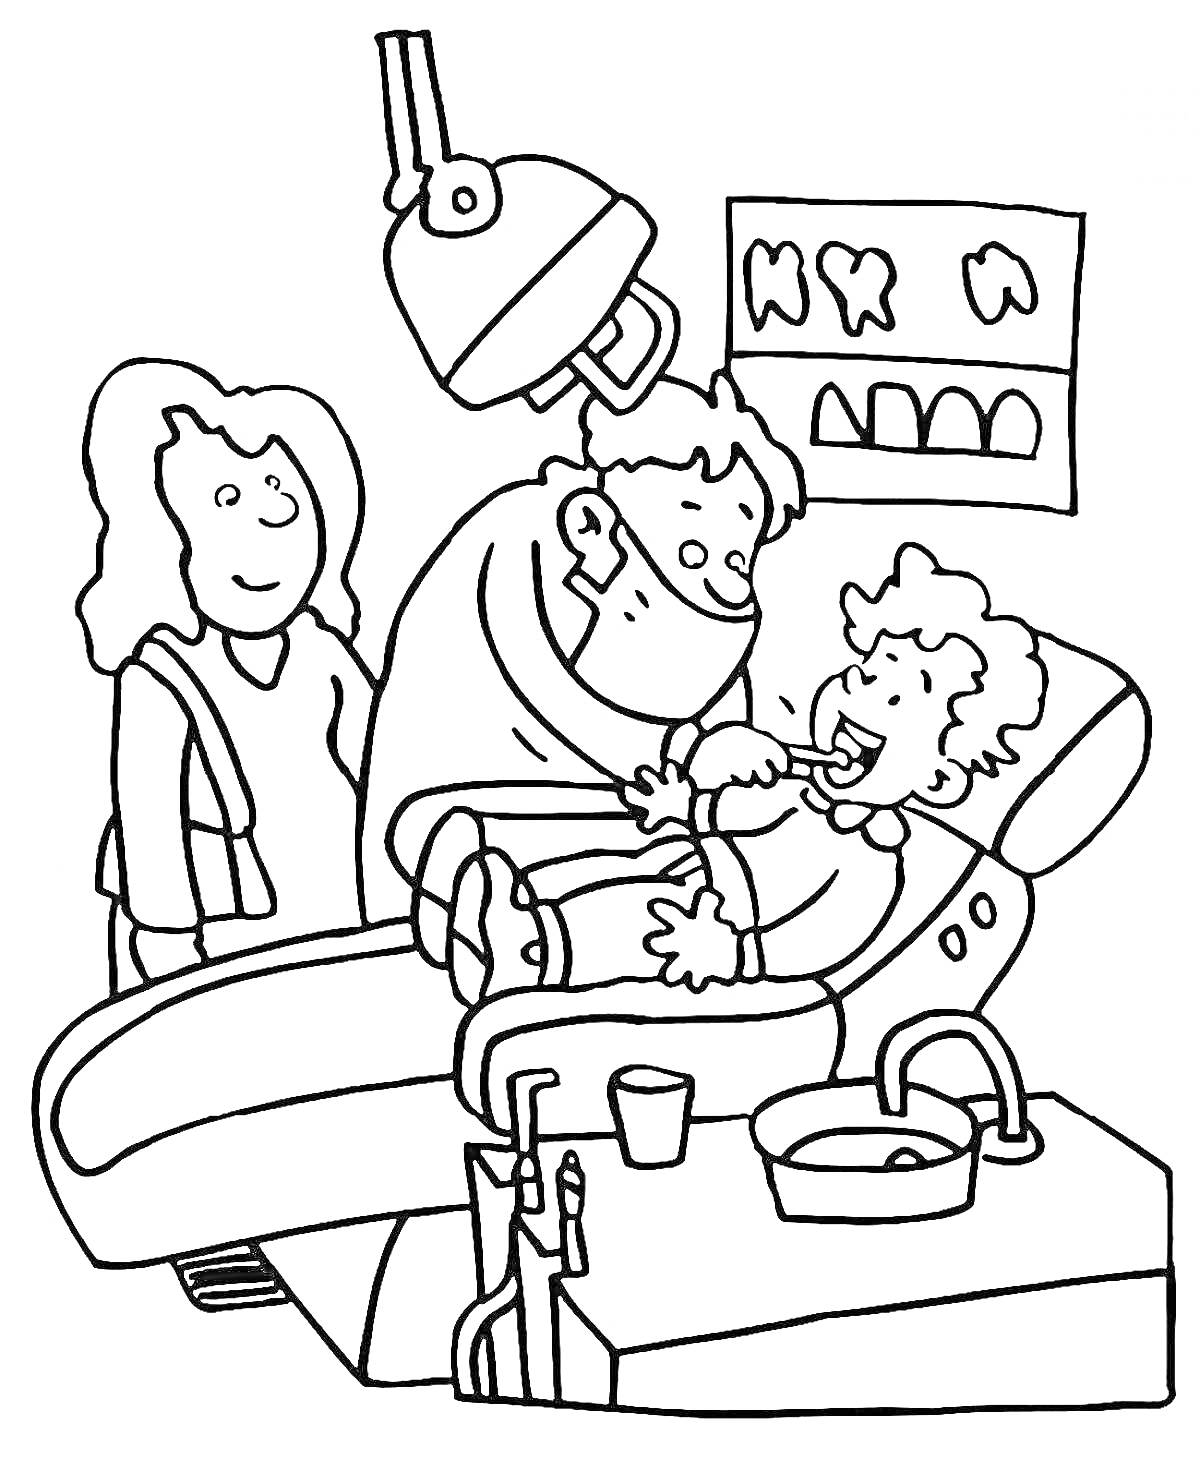 Раскраска Визит к стоматологу – ребенок на стоматологическом кресле, стоматолог осматривает зубы с использованием инструментов, ассистент смотрит, на стене висят изображения зубов